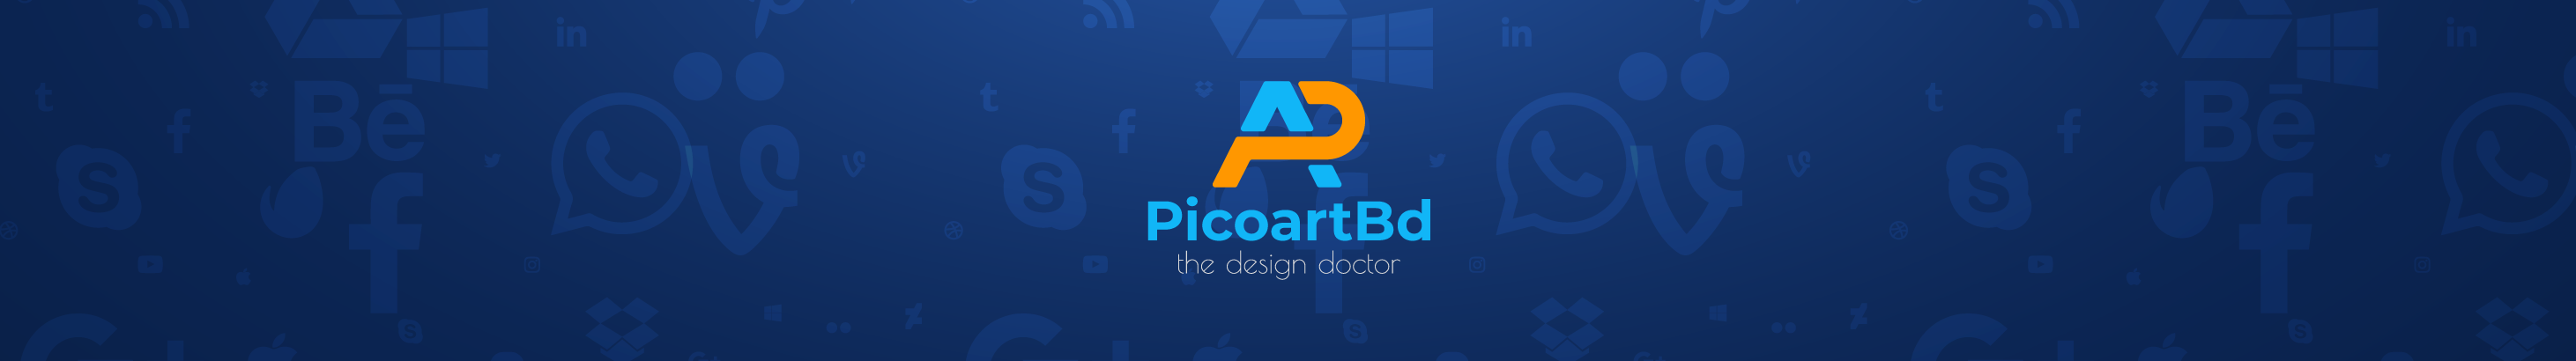 Picoart Bd's profile banner